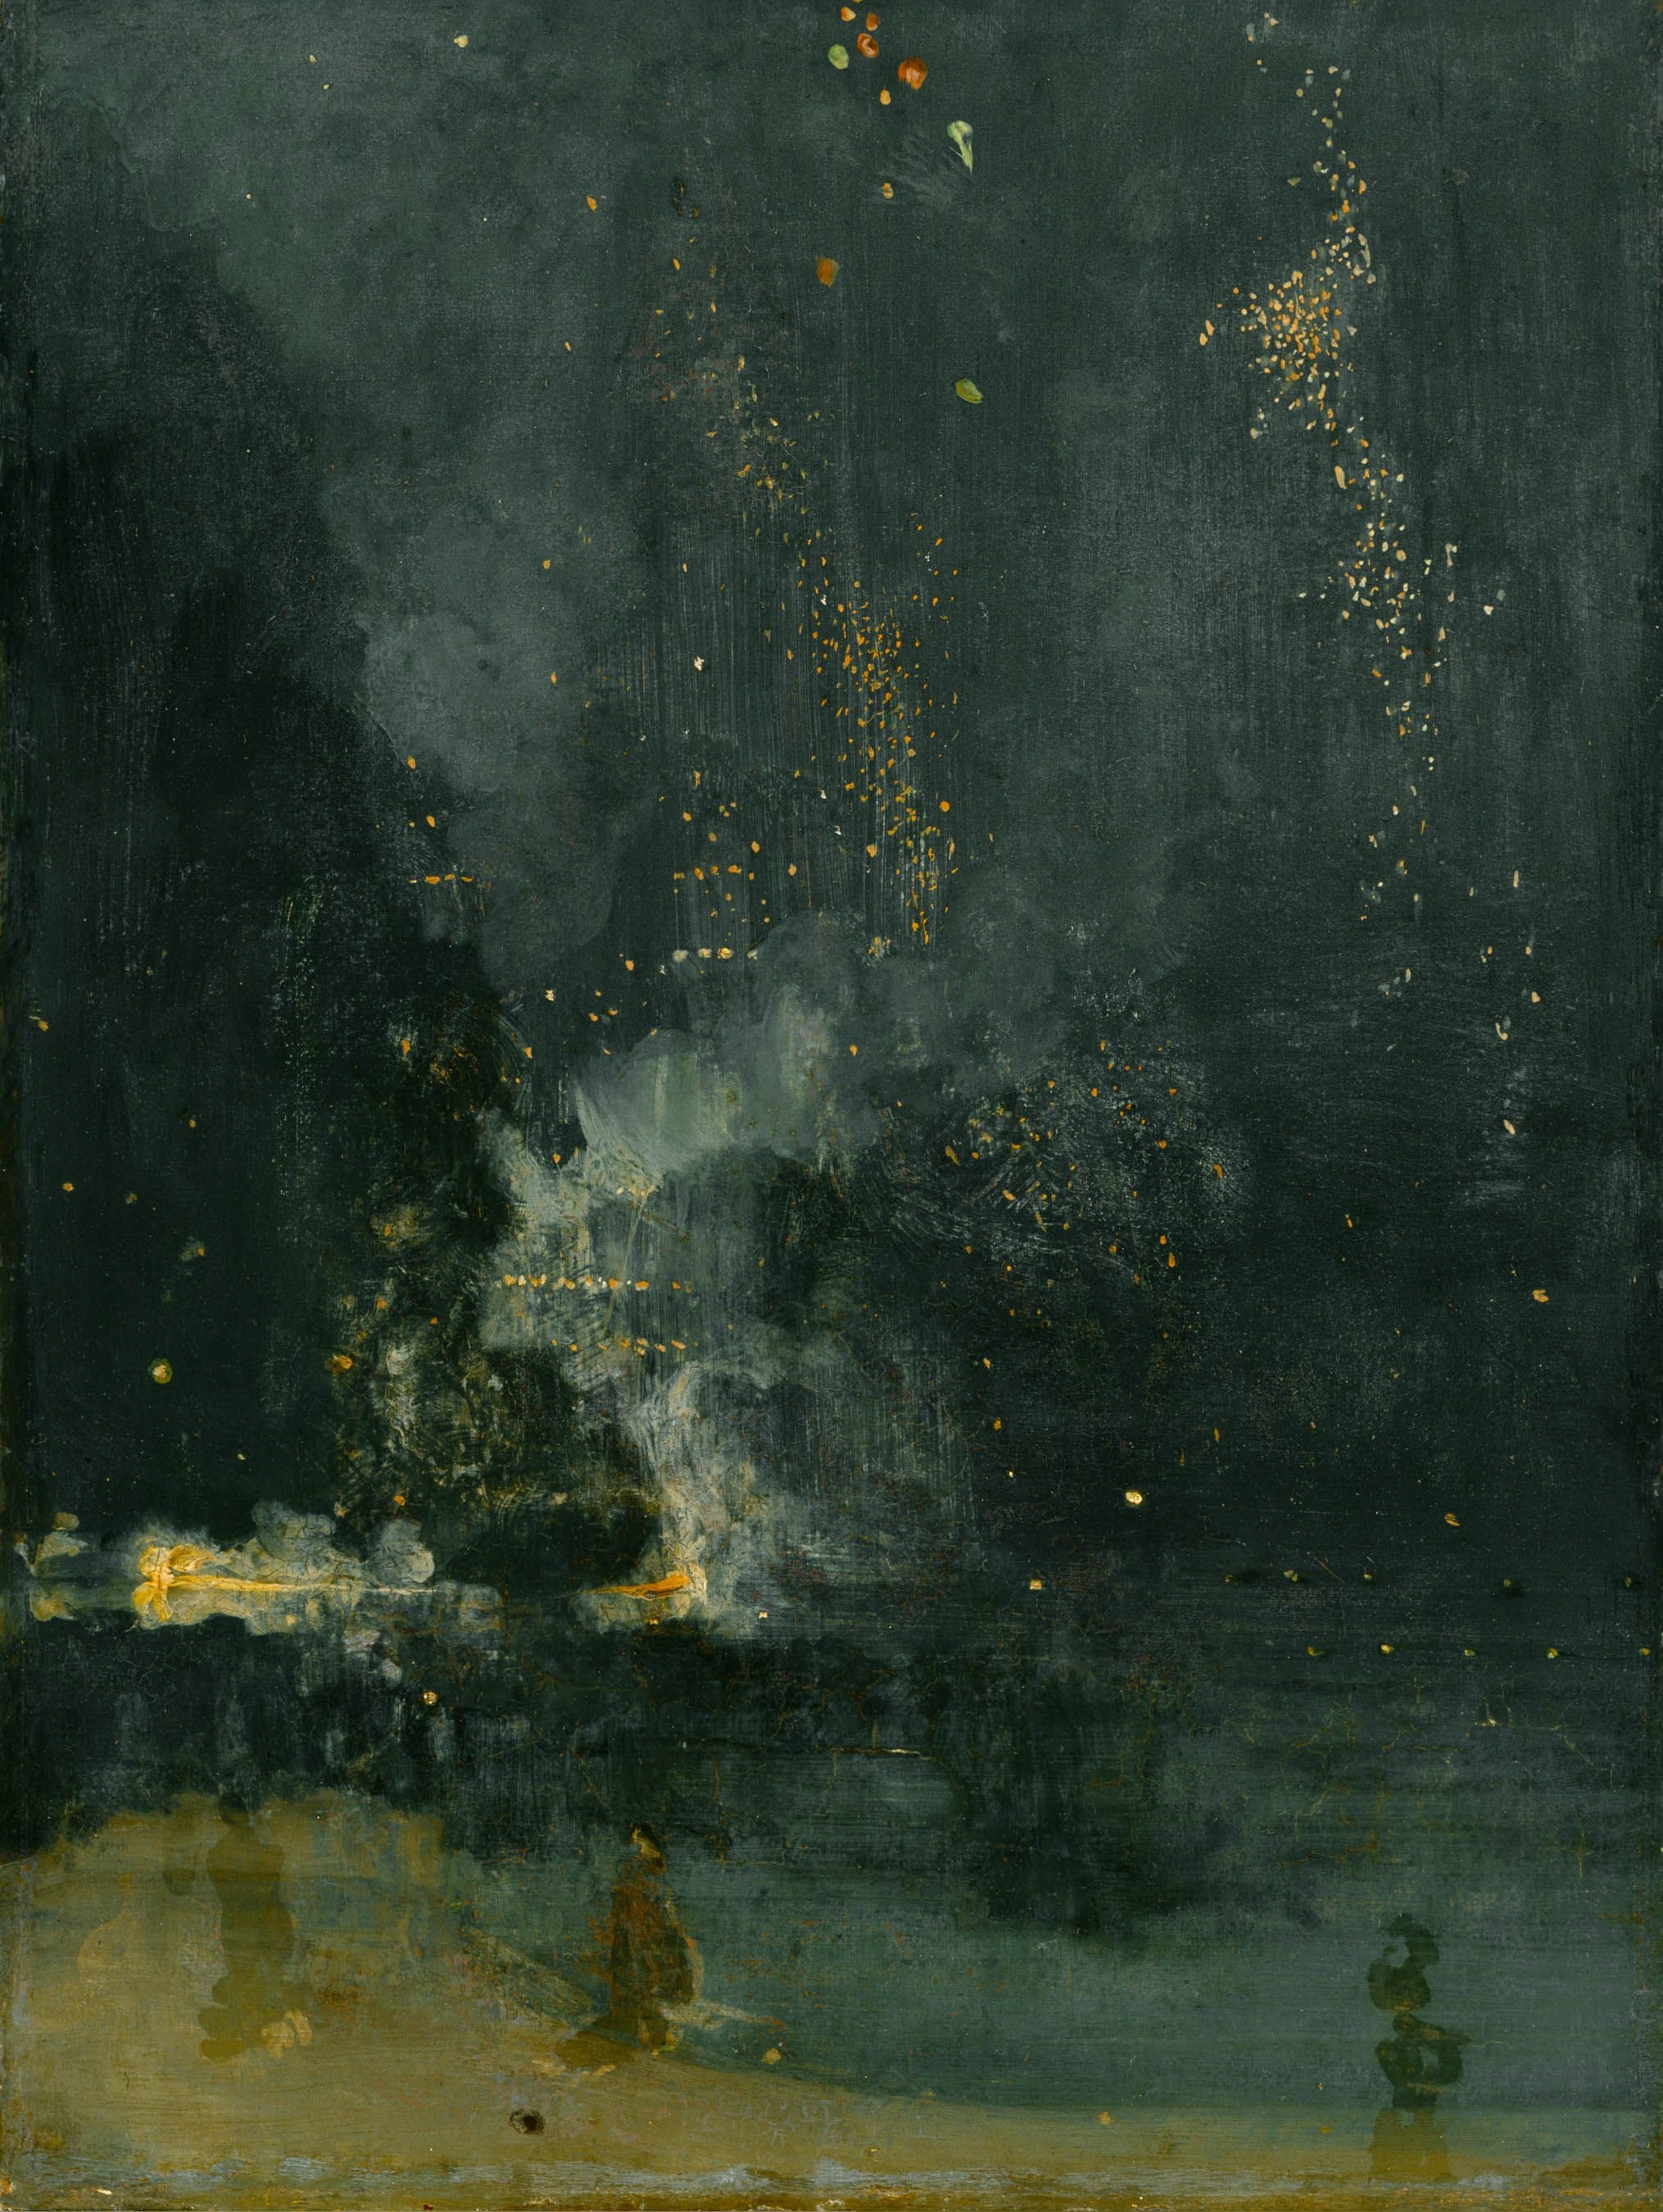 Nocturno en negro y dorado by James Abbott McNeill Whistler - 1872–77 Detroit Institute of Arts